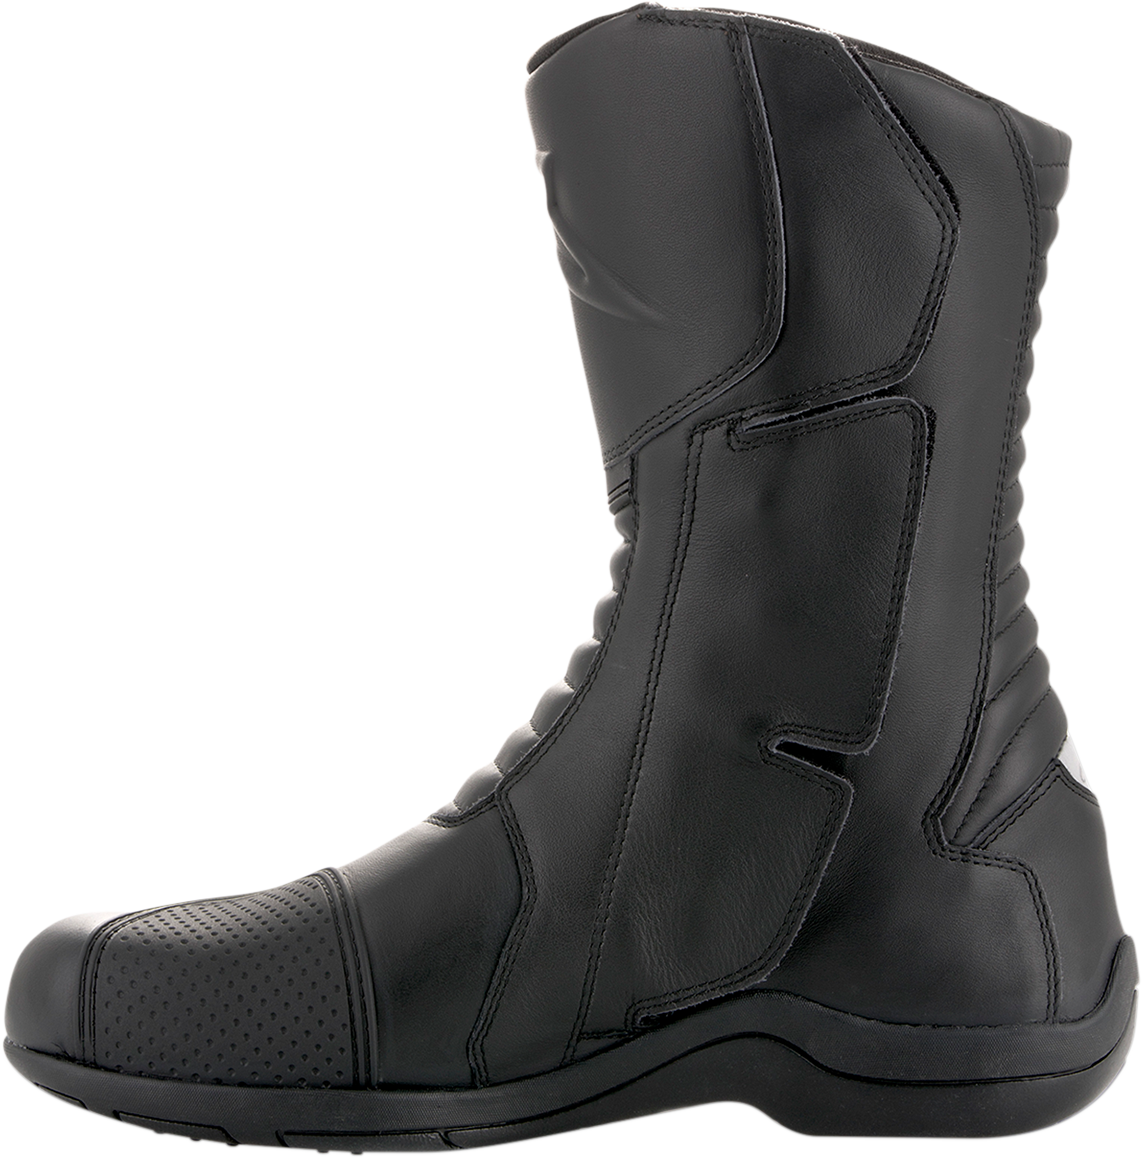 ALPINESTARS Andes v2 Drystar® Boots - Black - US 9 / EU 43 2447018-10-43